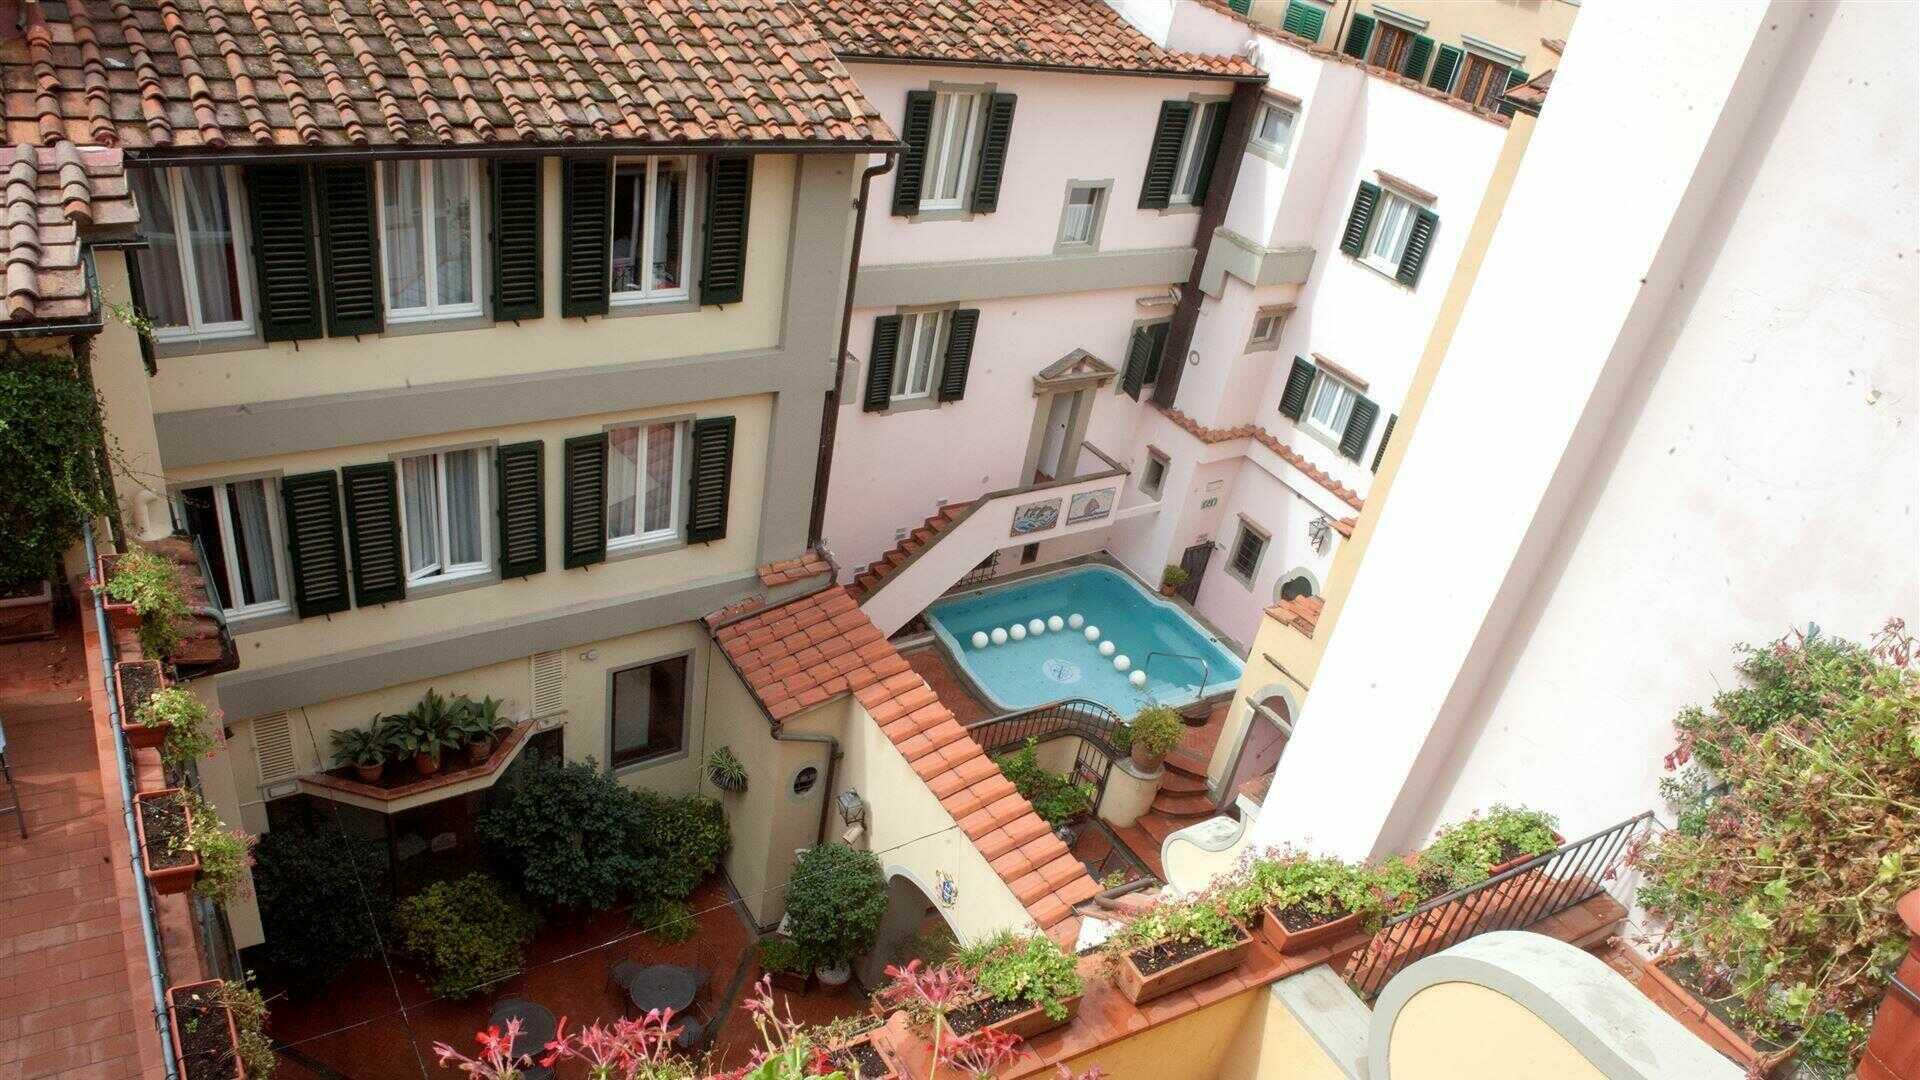 HOTEL RIVOLI FLORENCE ITALY